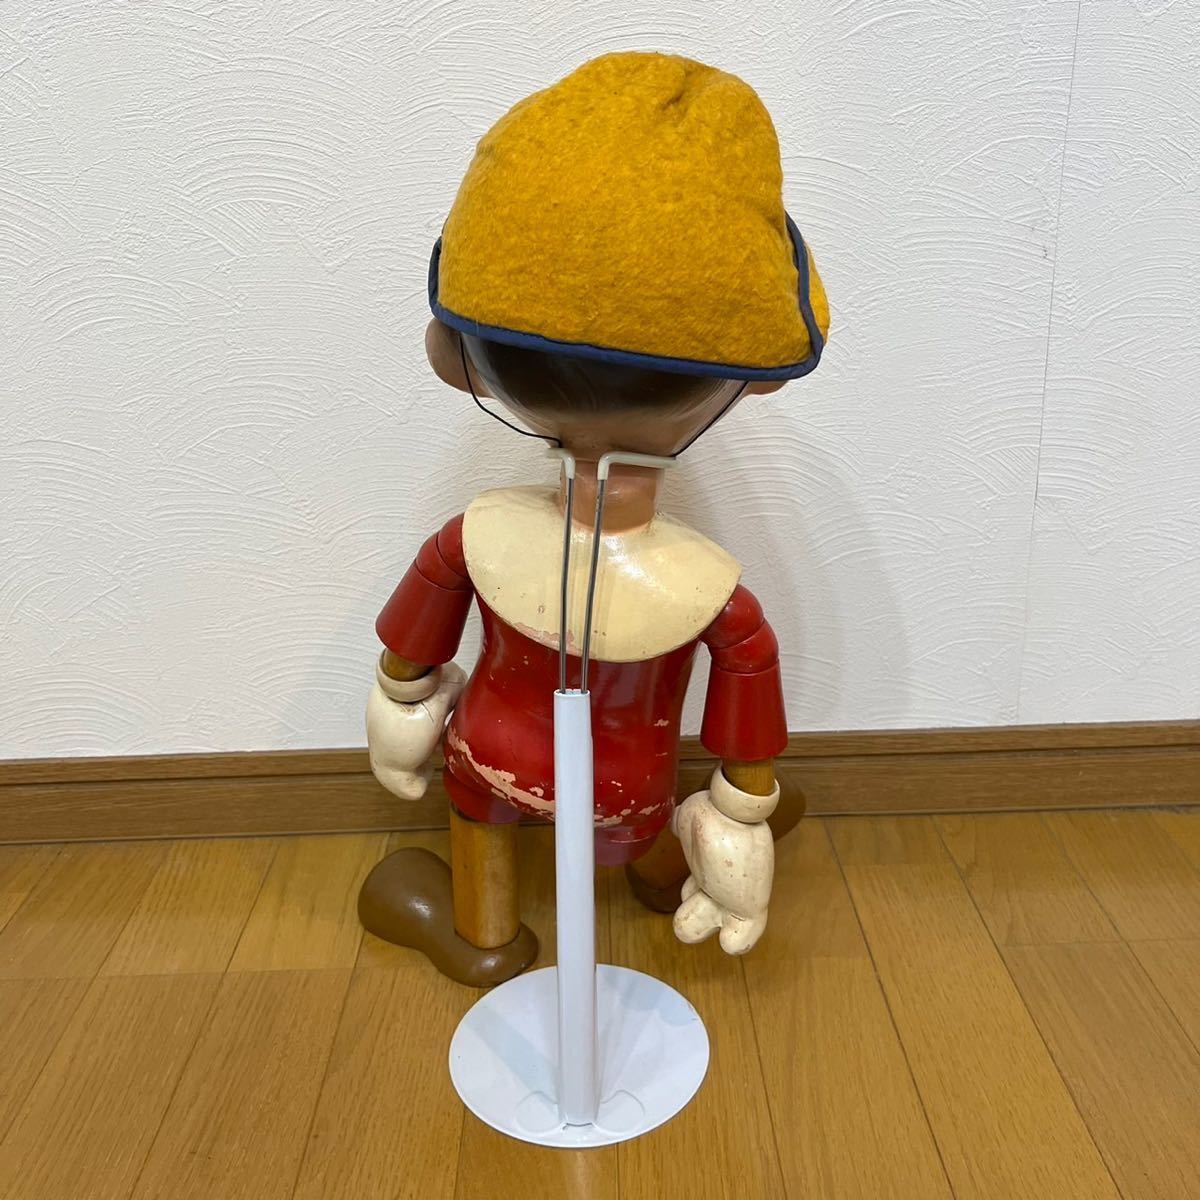 h326 希少 40 年代 ピノキオ IDEAL 社製 PINOCCHIO ウッド ドール ビンテージ vintage wood doll disney toy 木 人形 40s ディズニー_画像2